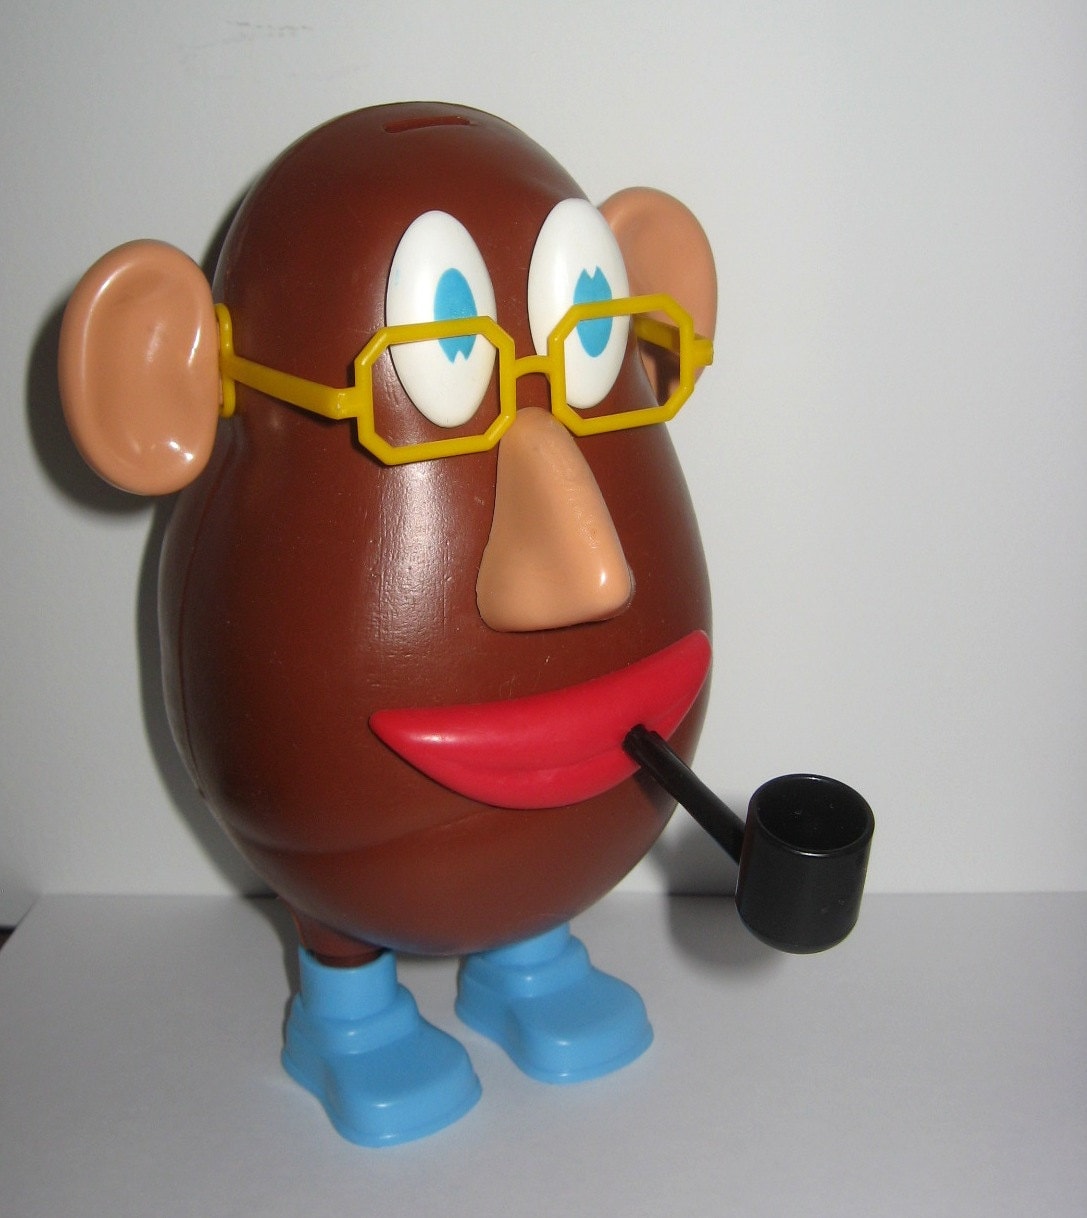 Picture Of Mr Potato Head, Mr., Mr potato head, Potato heads, Picture